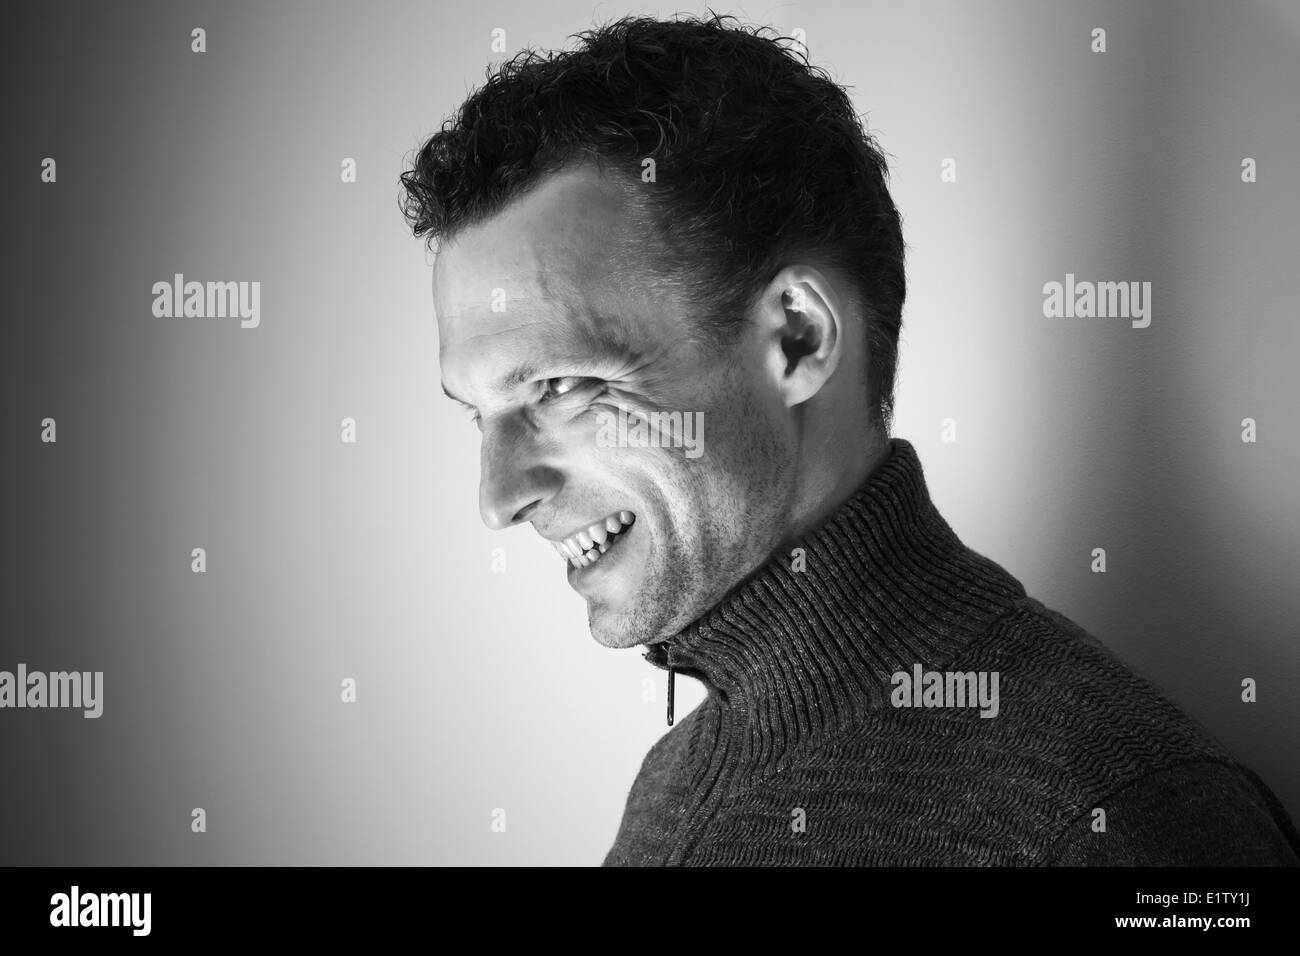 Böse lachenden jungen kaukasischen Mann schwarz / weiß Porträt Stockfoto